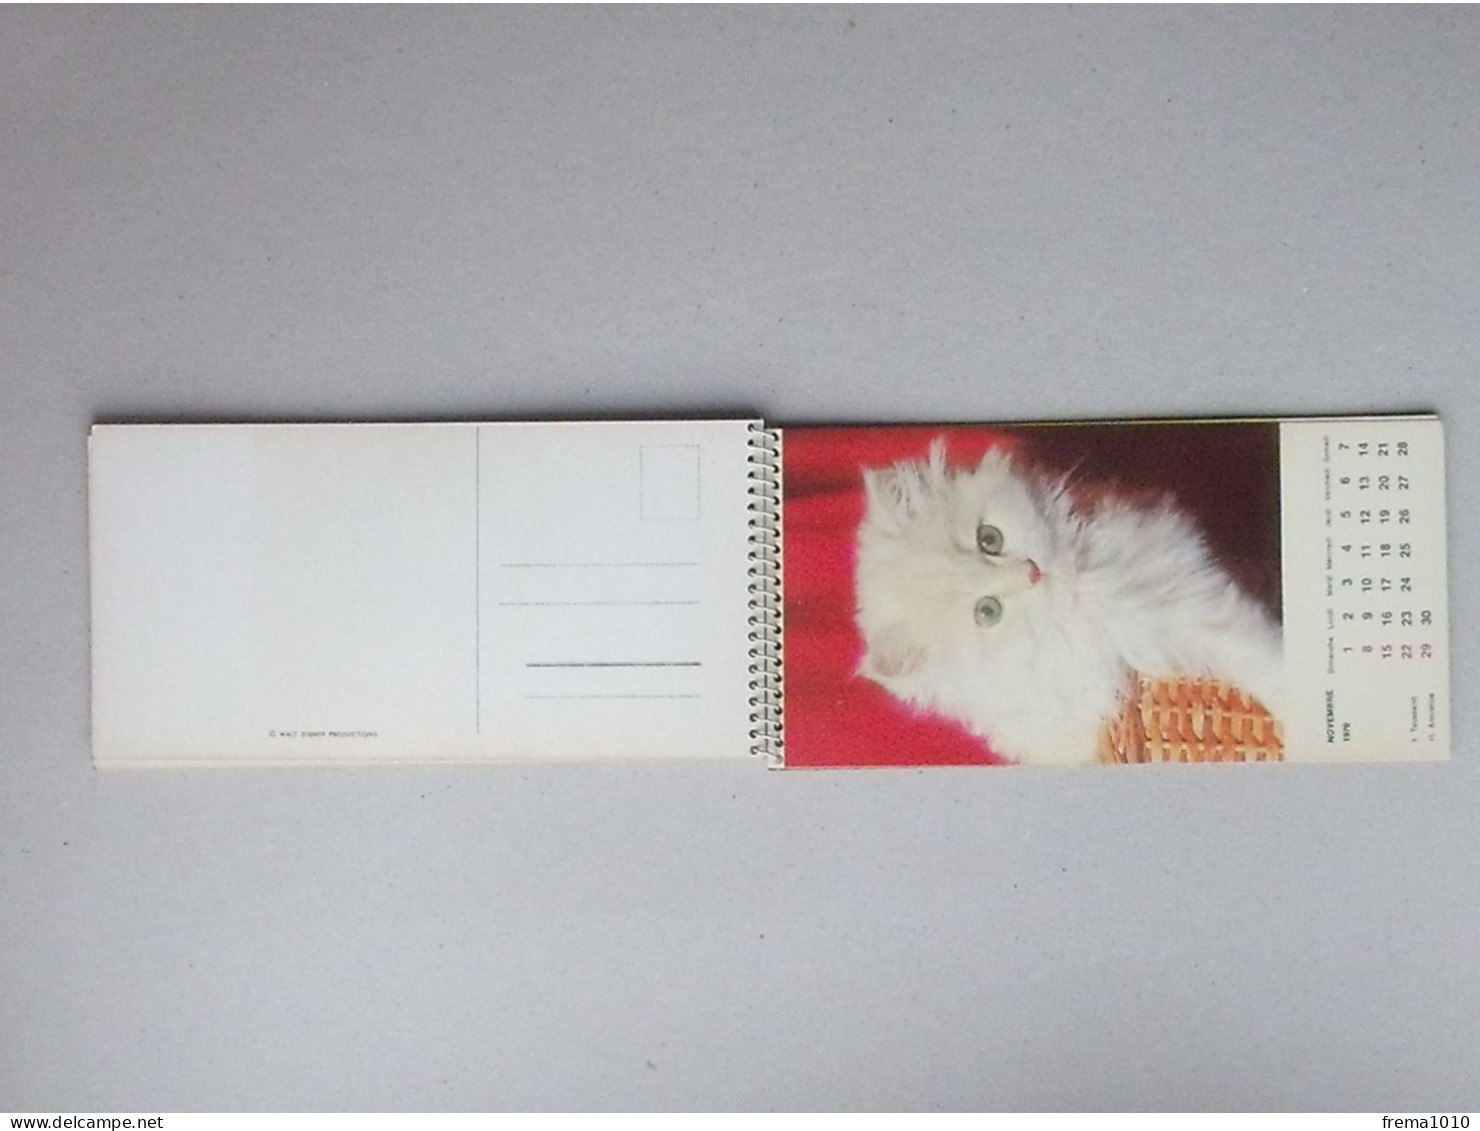 CALENDRIER 1970: Thème LES CHATONS Chaque mois est utilisable en carte postale - CHAT  Ed. LYS Belgique Prod. W. DISNEY